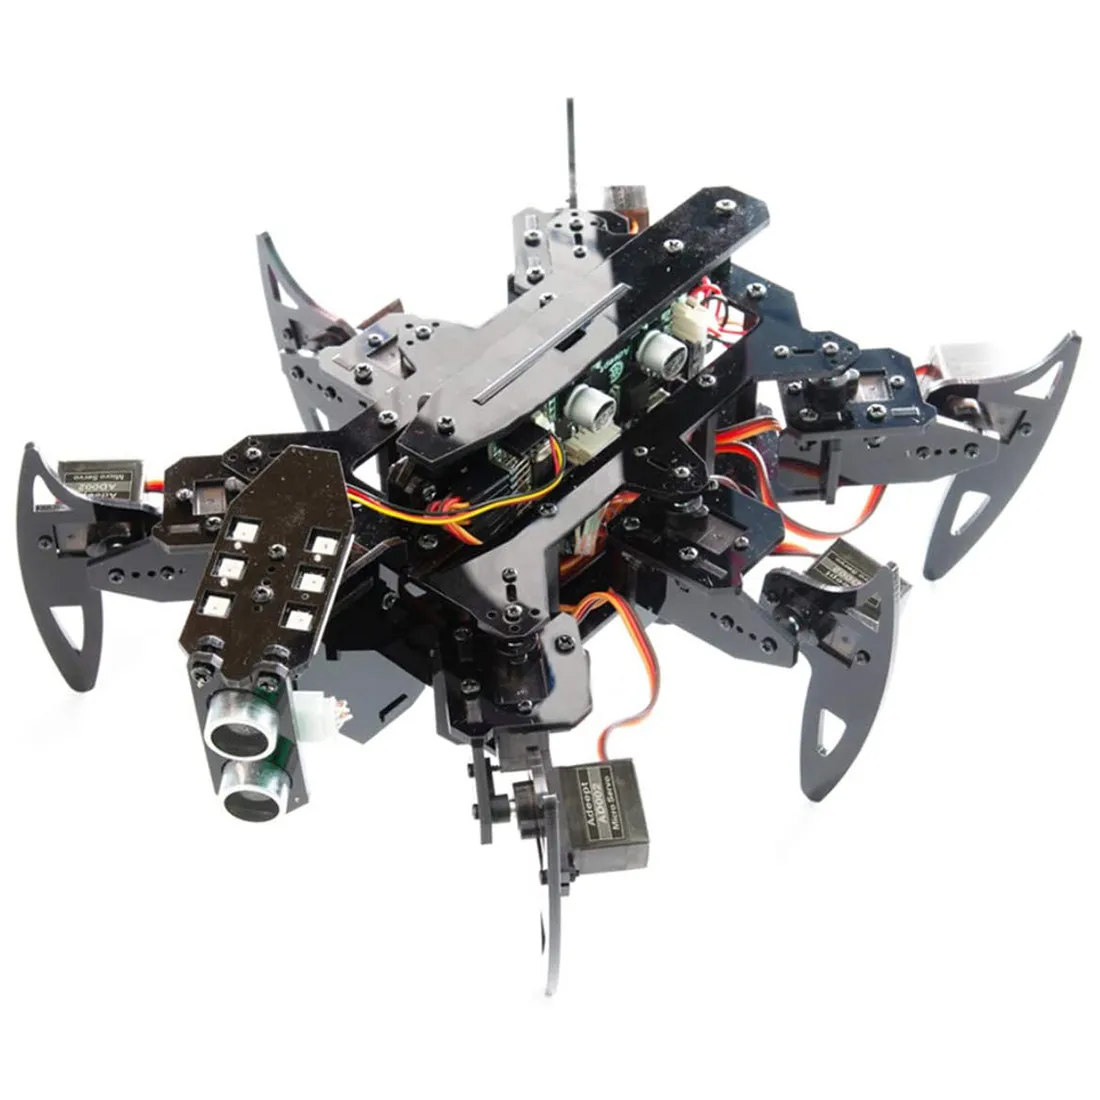 Hexapod Spider Robot Kit Kit for Arduino